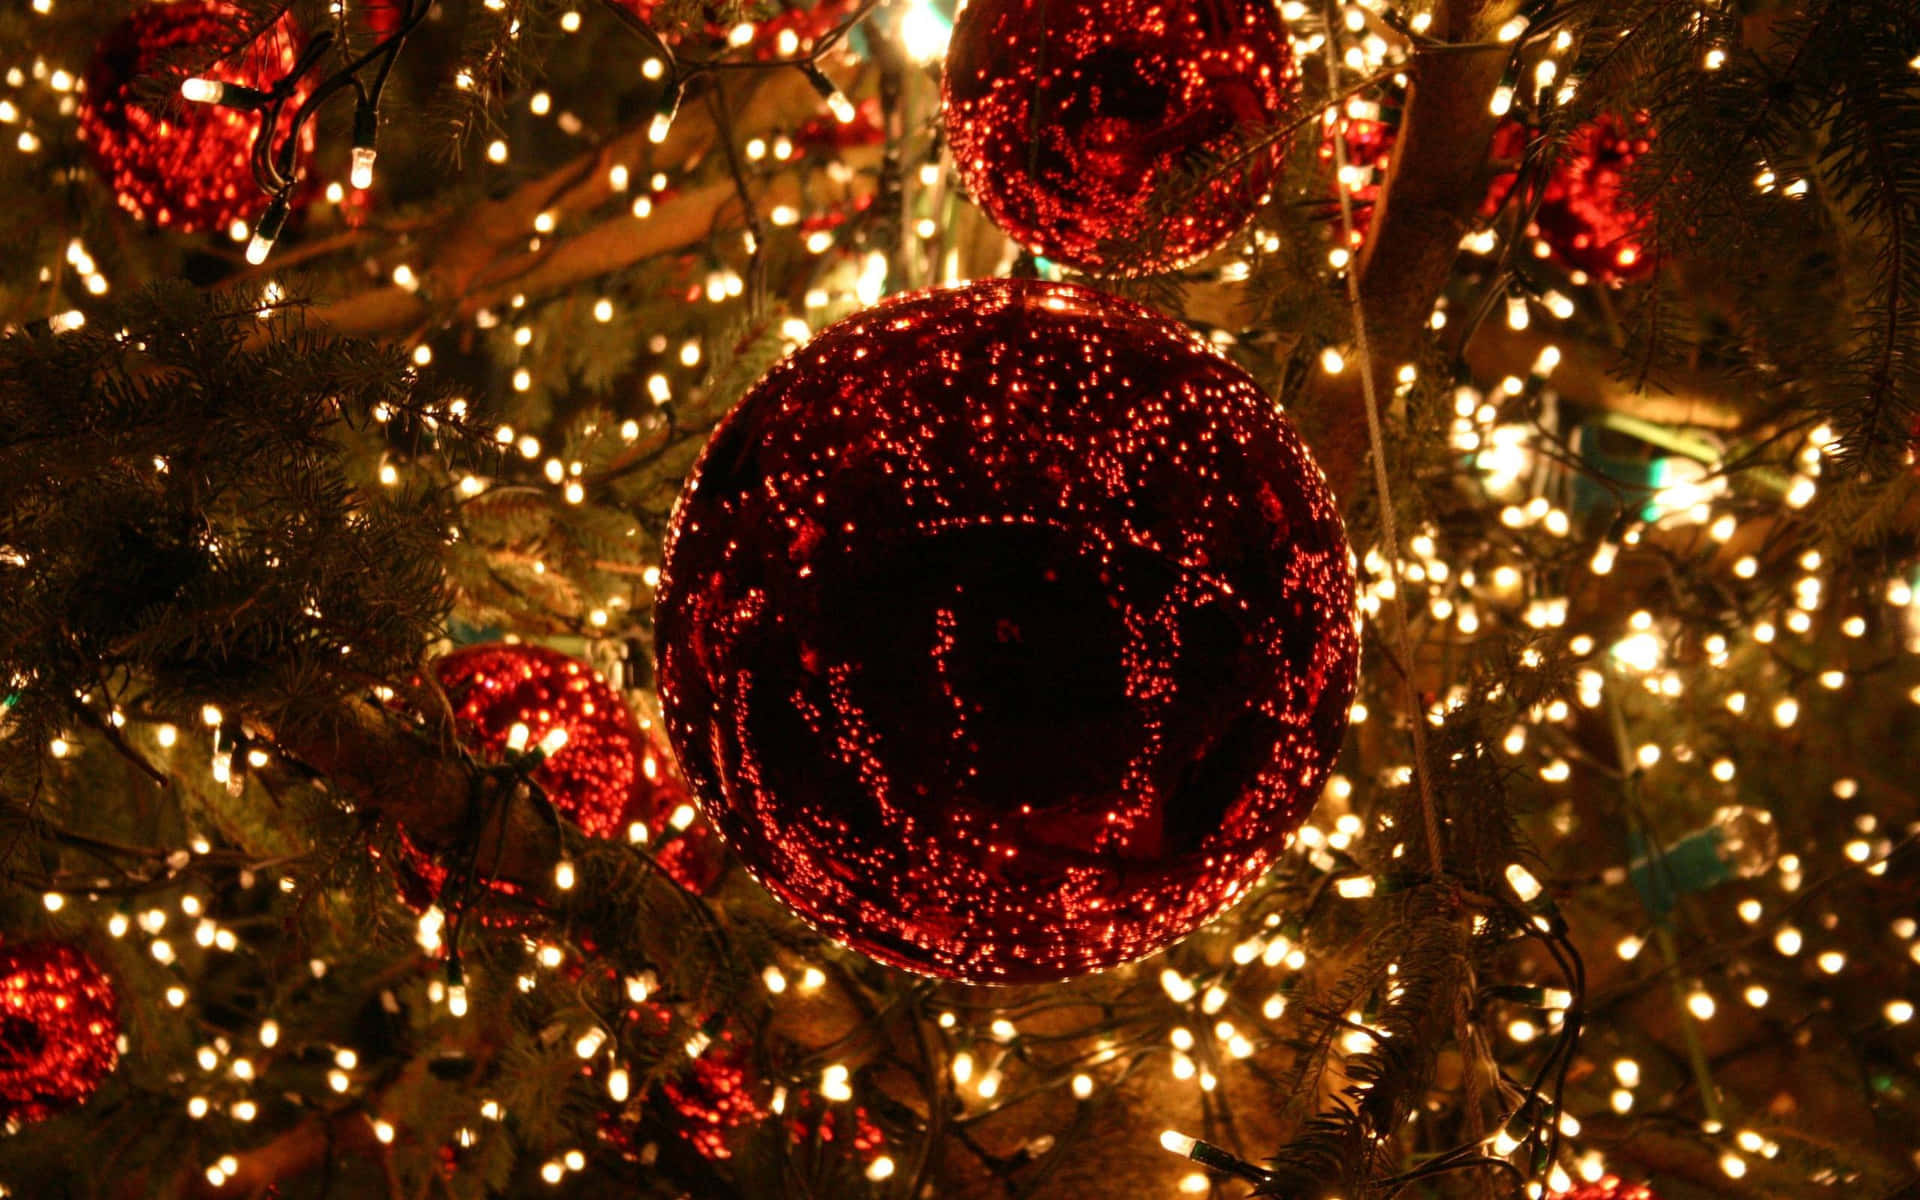 Imagende Luces Navideñas Y Bolas De Navidad Rojas.